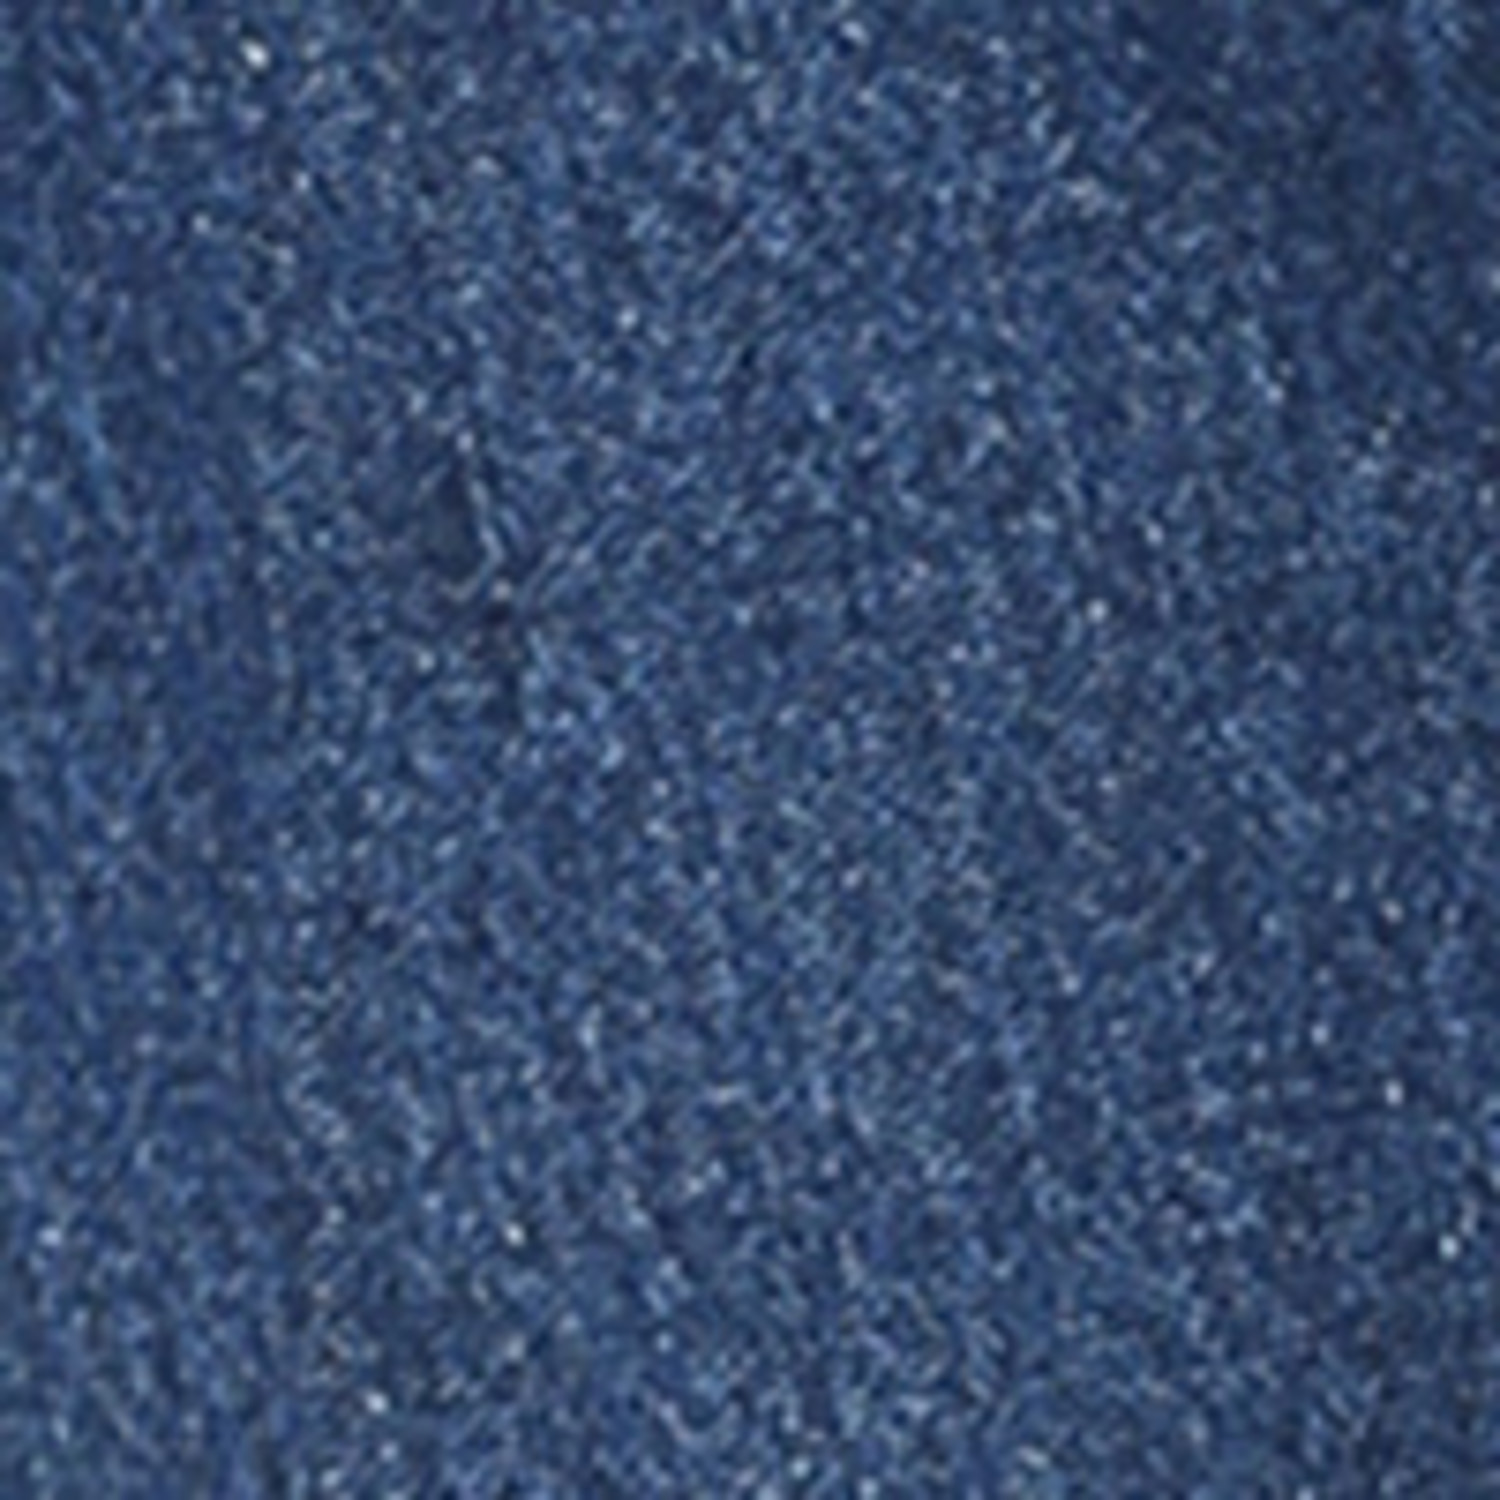 Wrangler George Strait Cowboy Cut Original Fit Jeans - Frontier